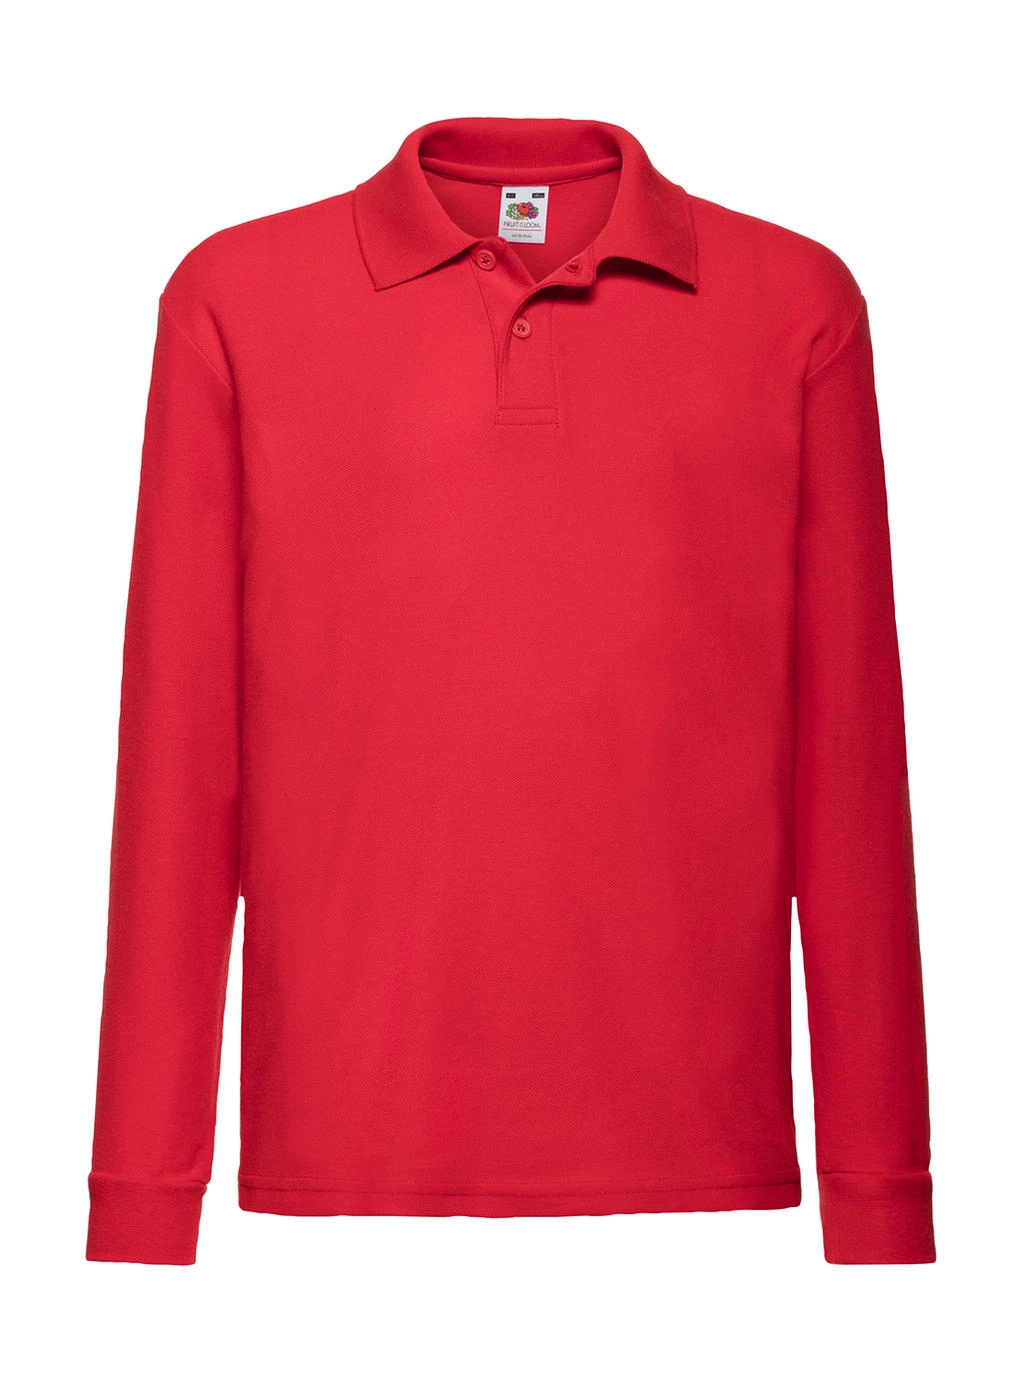 Kids` 65/35 Long Sleeve Polo zum Besticken und Bedrucken in der Farbe Red mit Ihren Logo, Schriftzug oder Motiv.